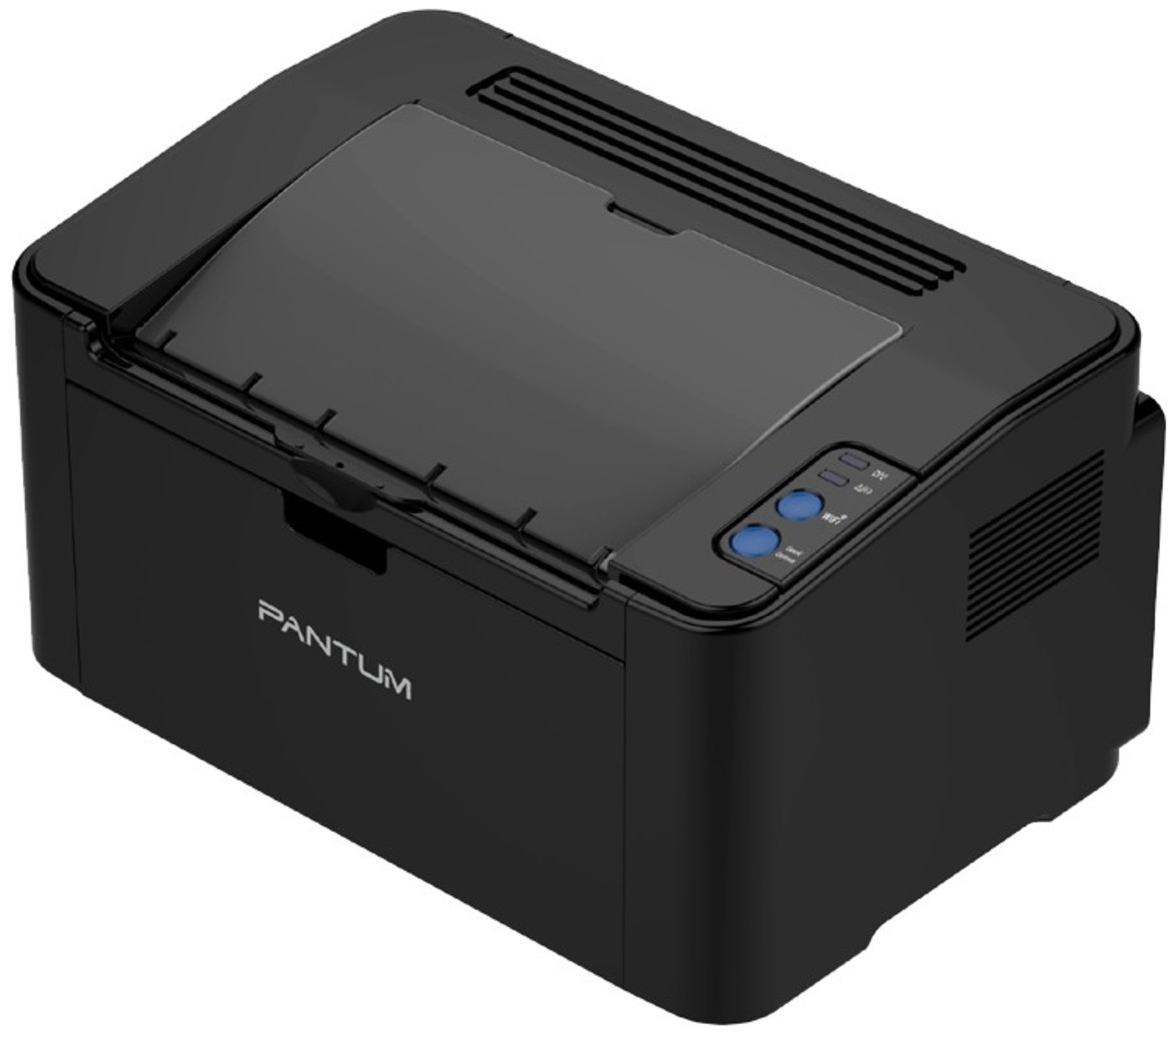 Принтер Pantum P2207 (P2207)